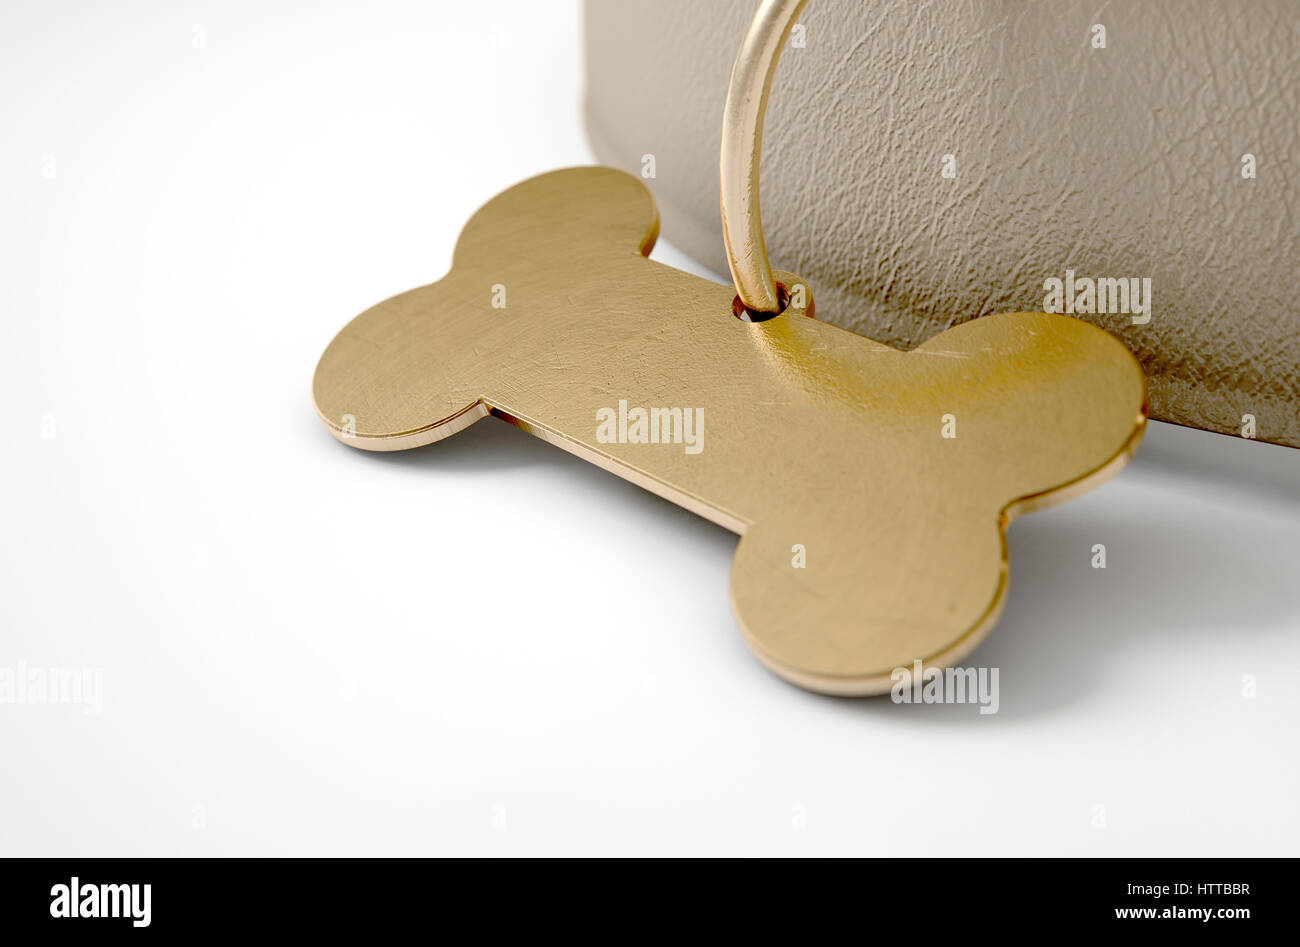 Un collier pour chien en cuir marron avec une étiquette d'identification en forme d'os en laiton isolé sur un fond blanc studio - 3D render Banque D'Images